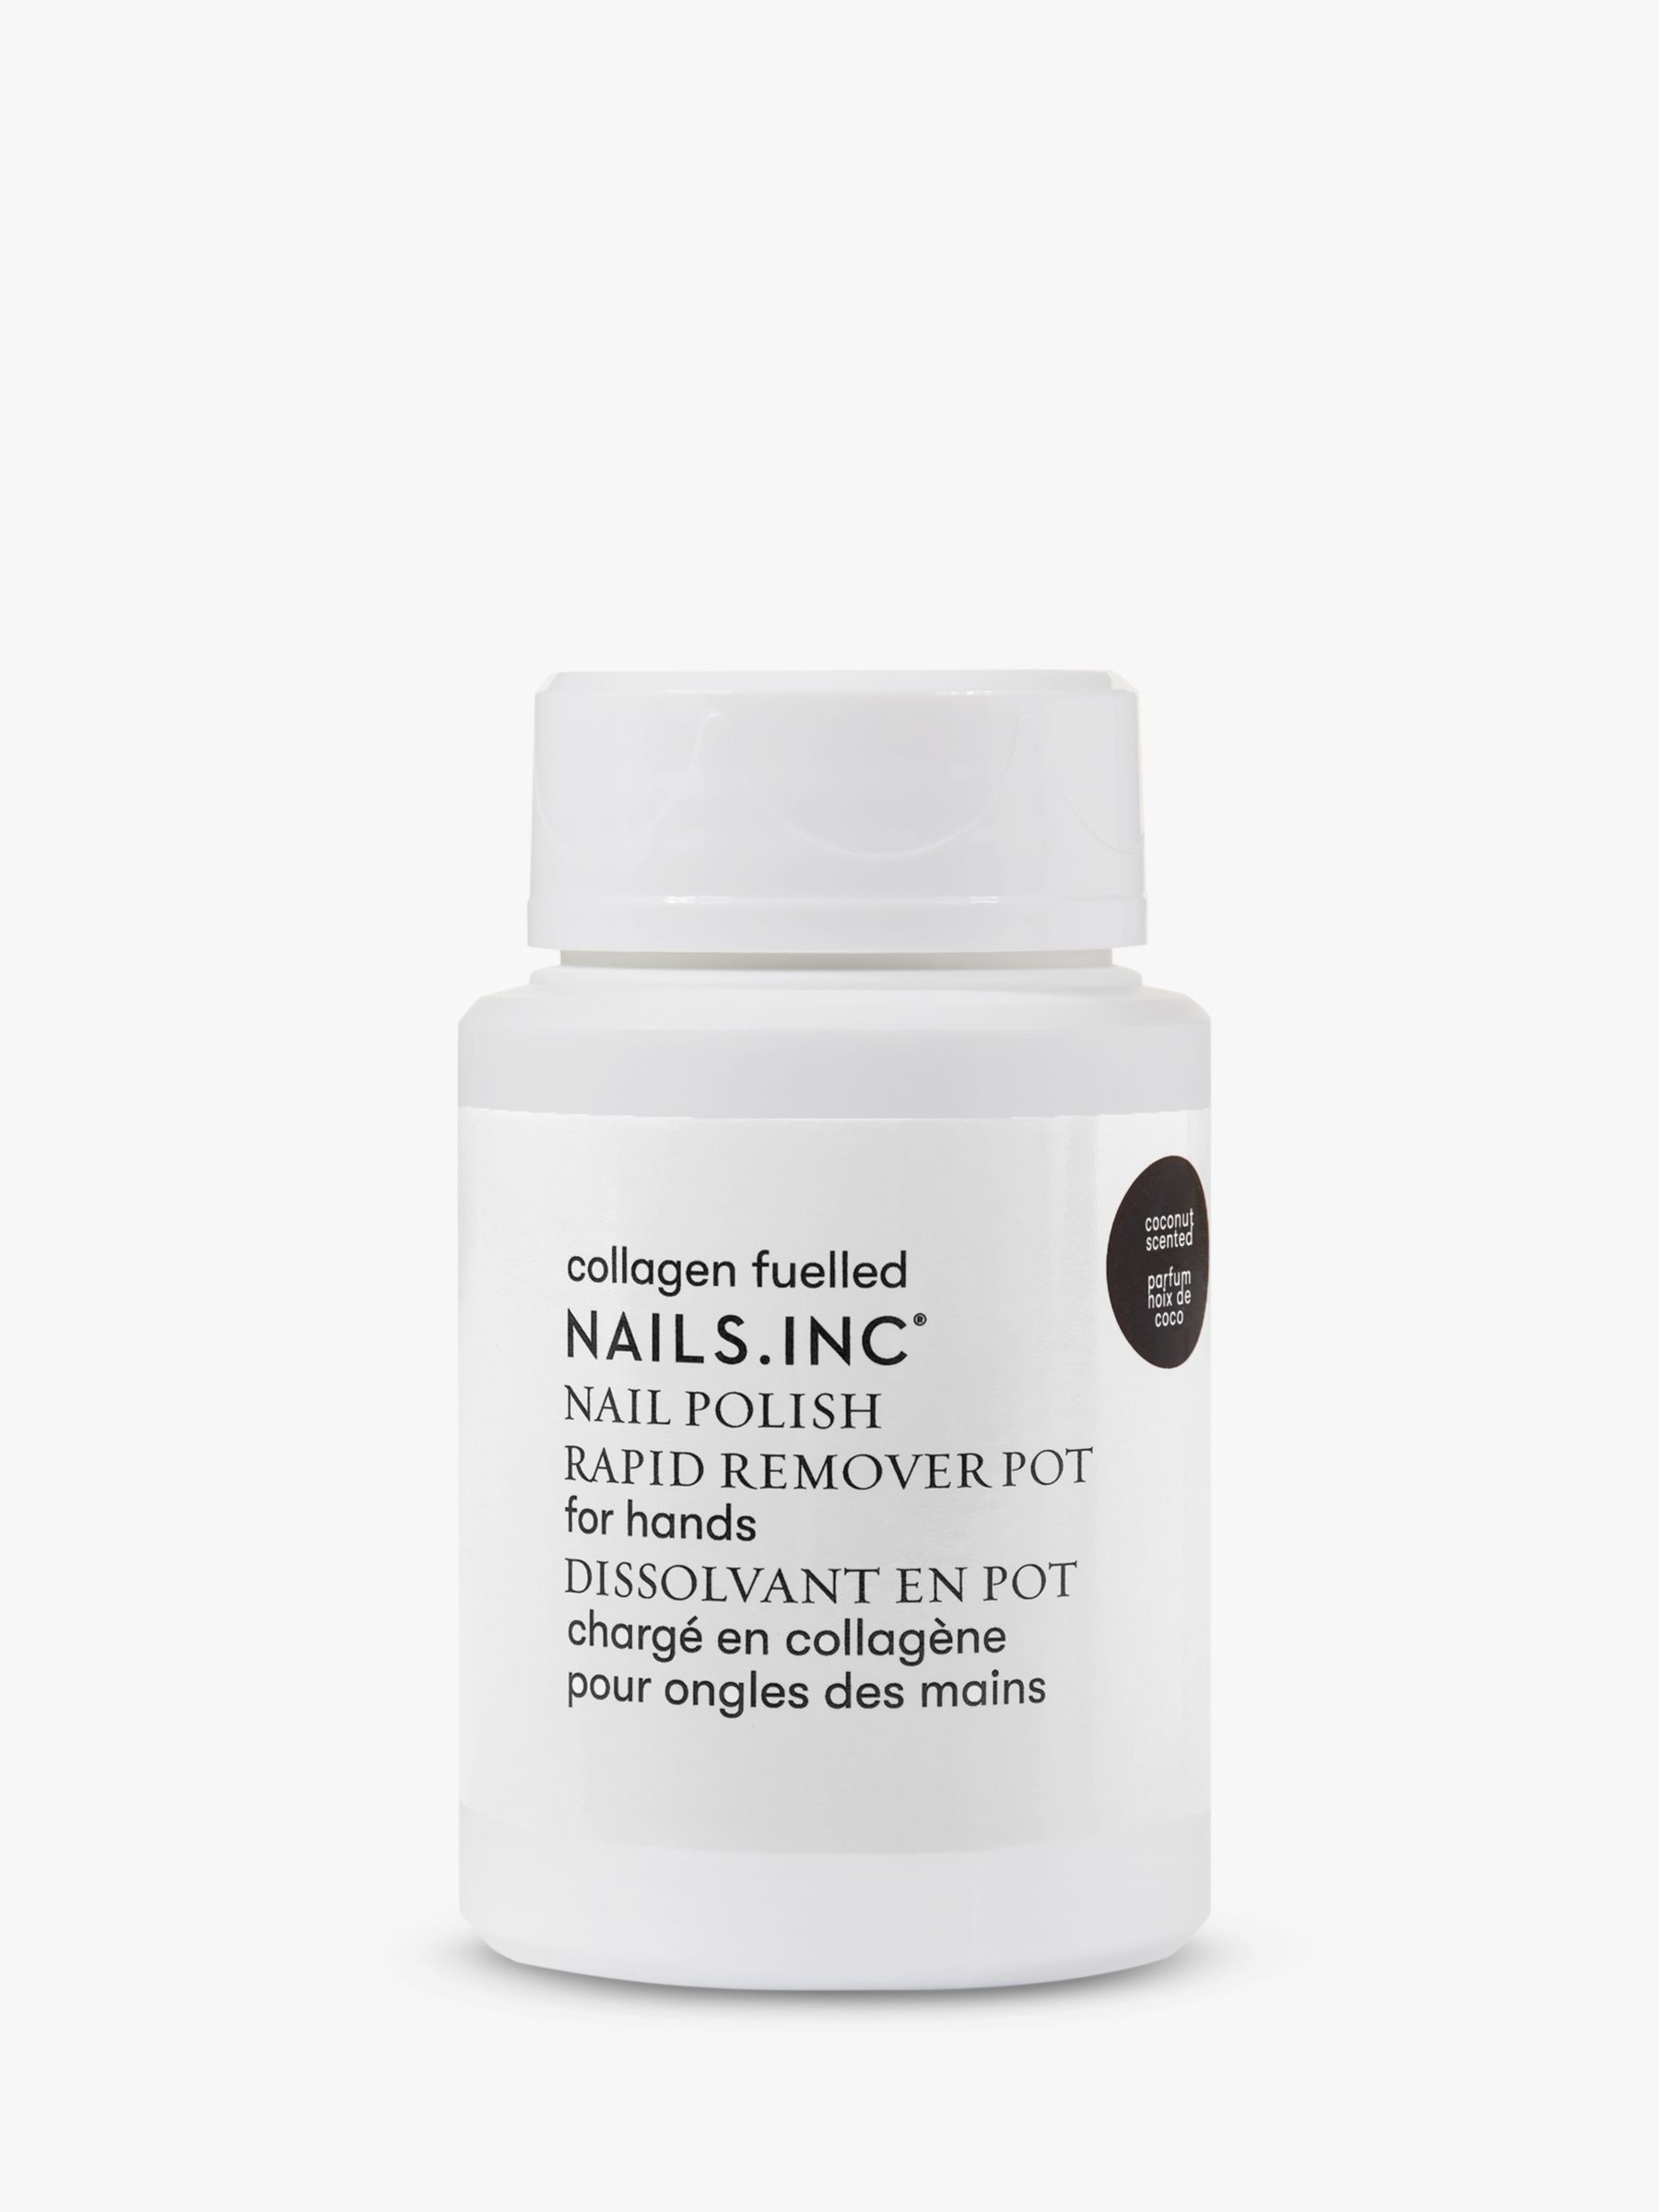 Nails Inc Express Nail Polish Remover, 50ml 1